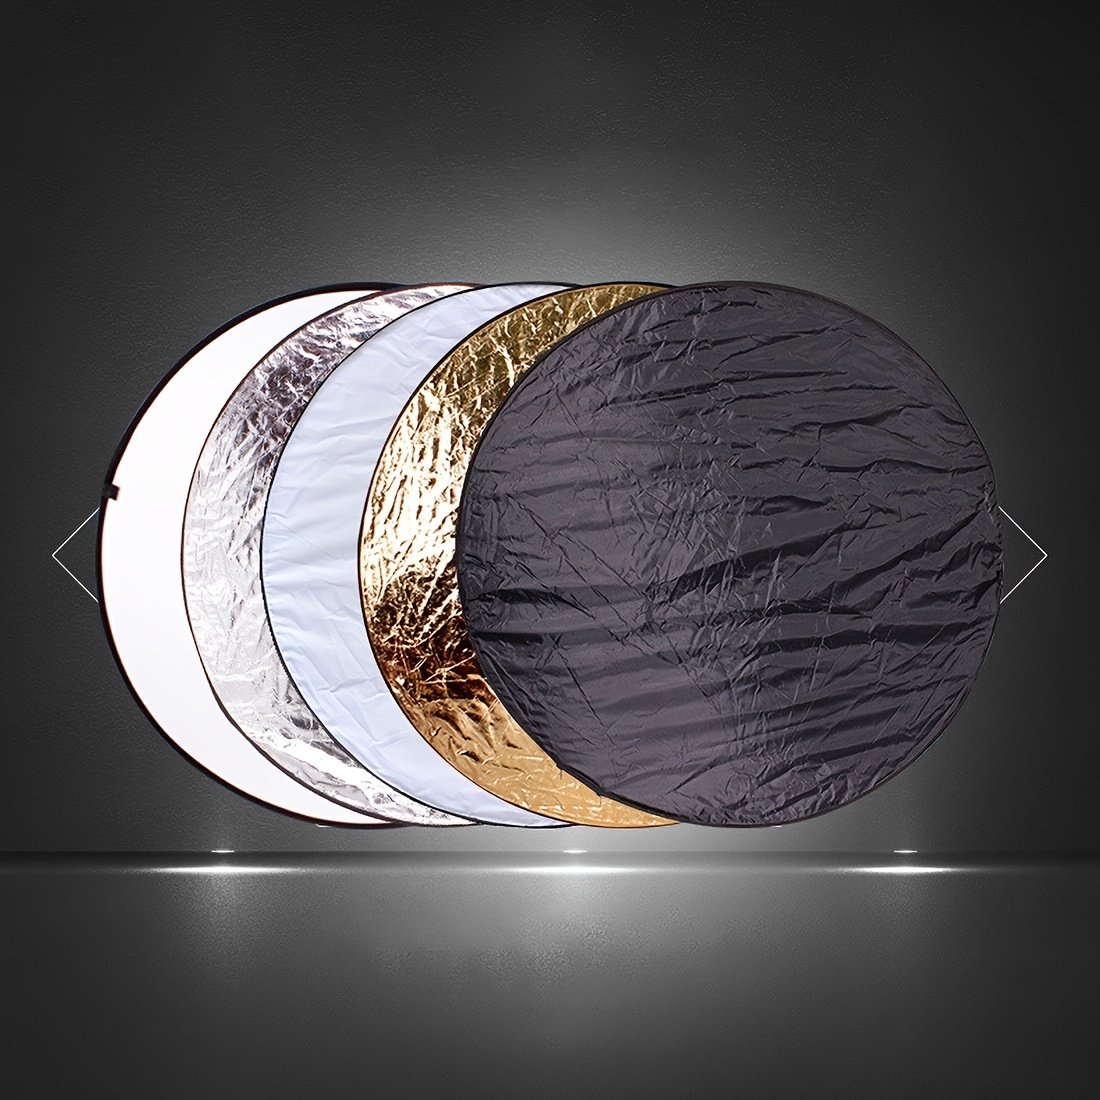 5 en 1 Reflector de fotografía reflectores de luz para fotografía  Multi-disco foto Reflector plegable con bolsa-translúcido, pta, oro, negro  - 110cm